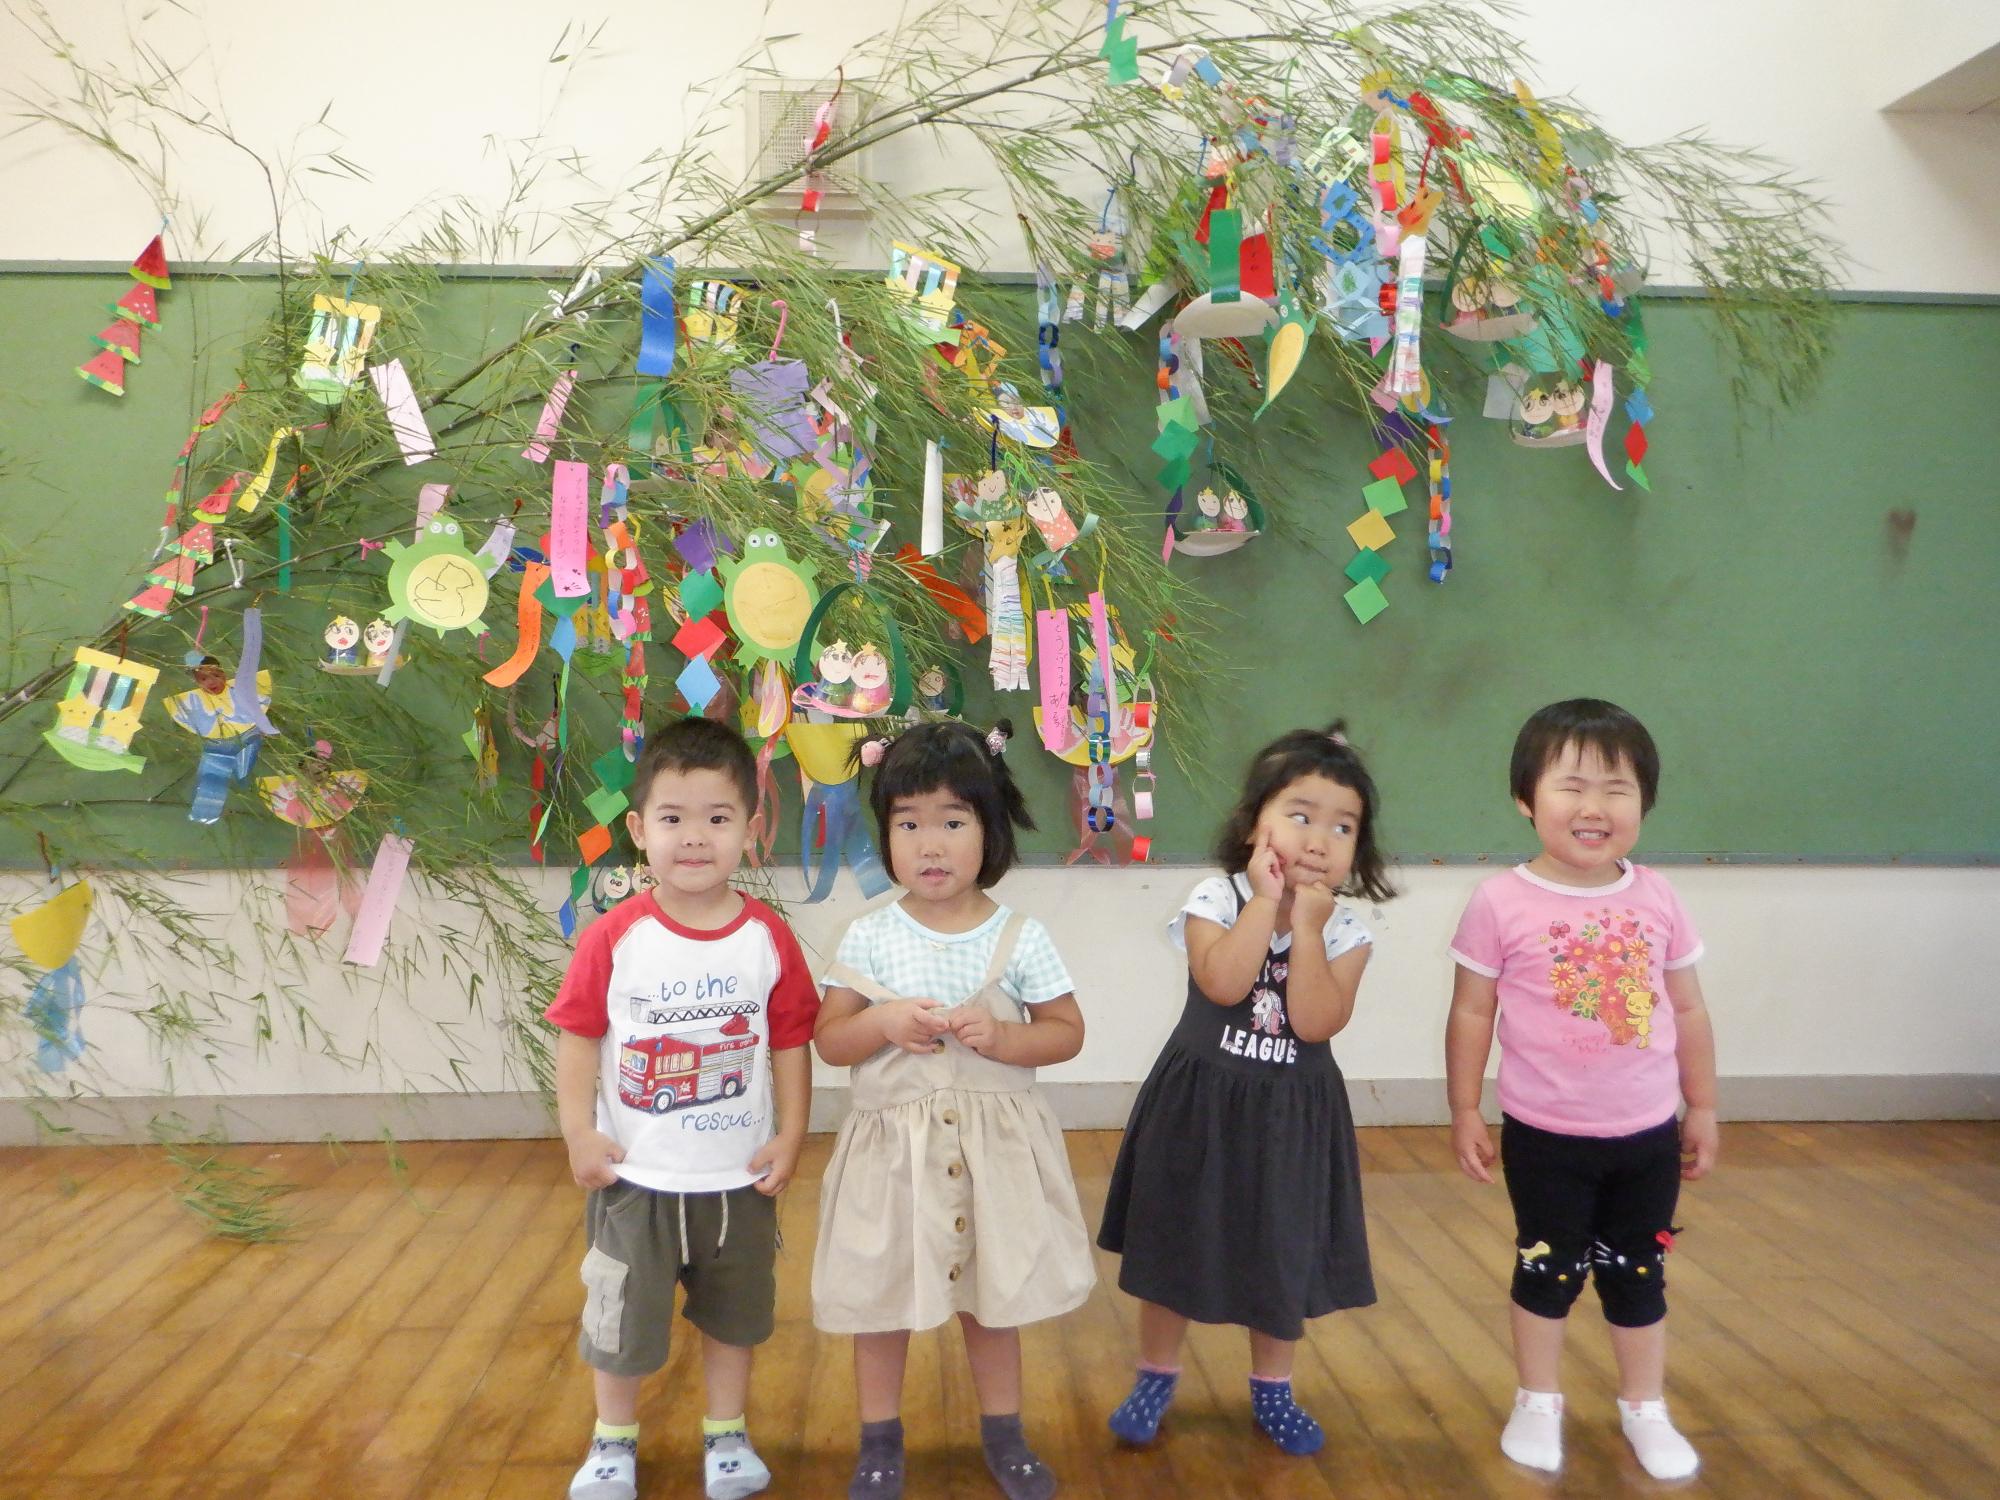 みんなで作った笹飾り、おちゃめな二歳児、子ども四人で笹飾りの前で、